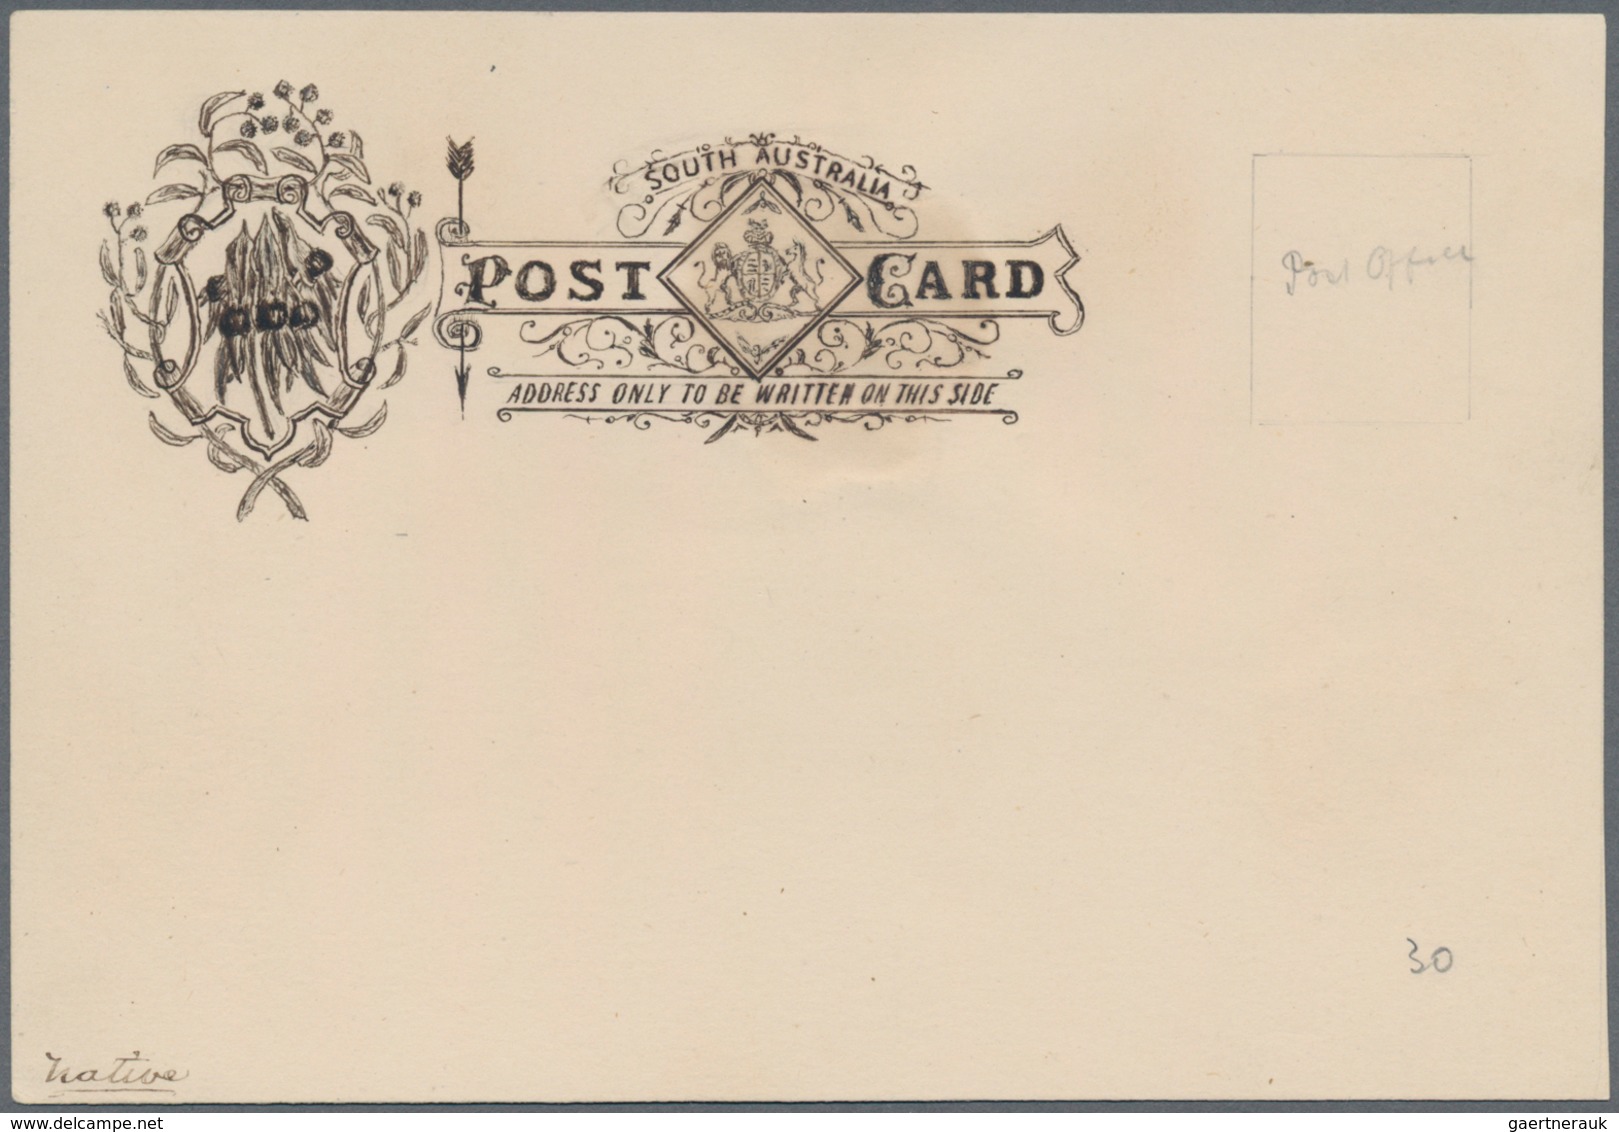 Südaustralien: 1890's, Postcard Design Competition Postcard-size ESSAY ('Native' No. 30) Hand-painte - Covers & Documents